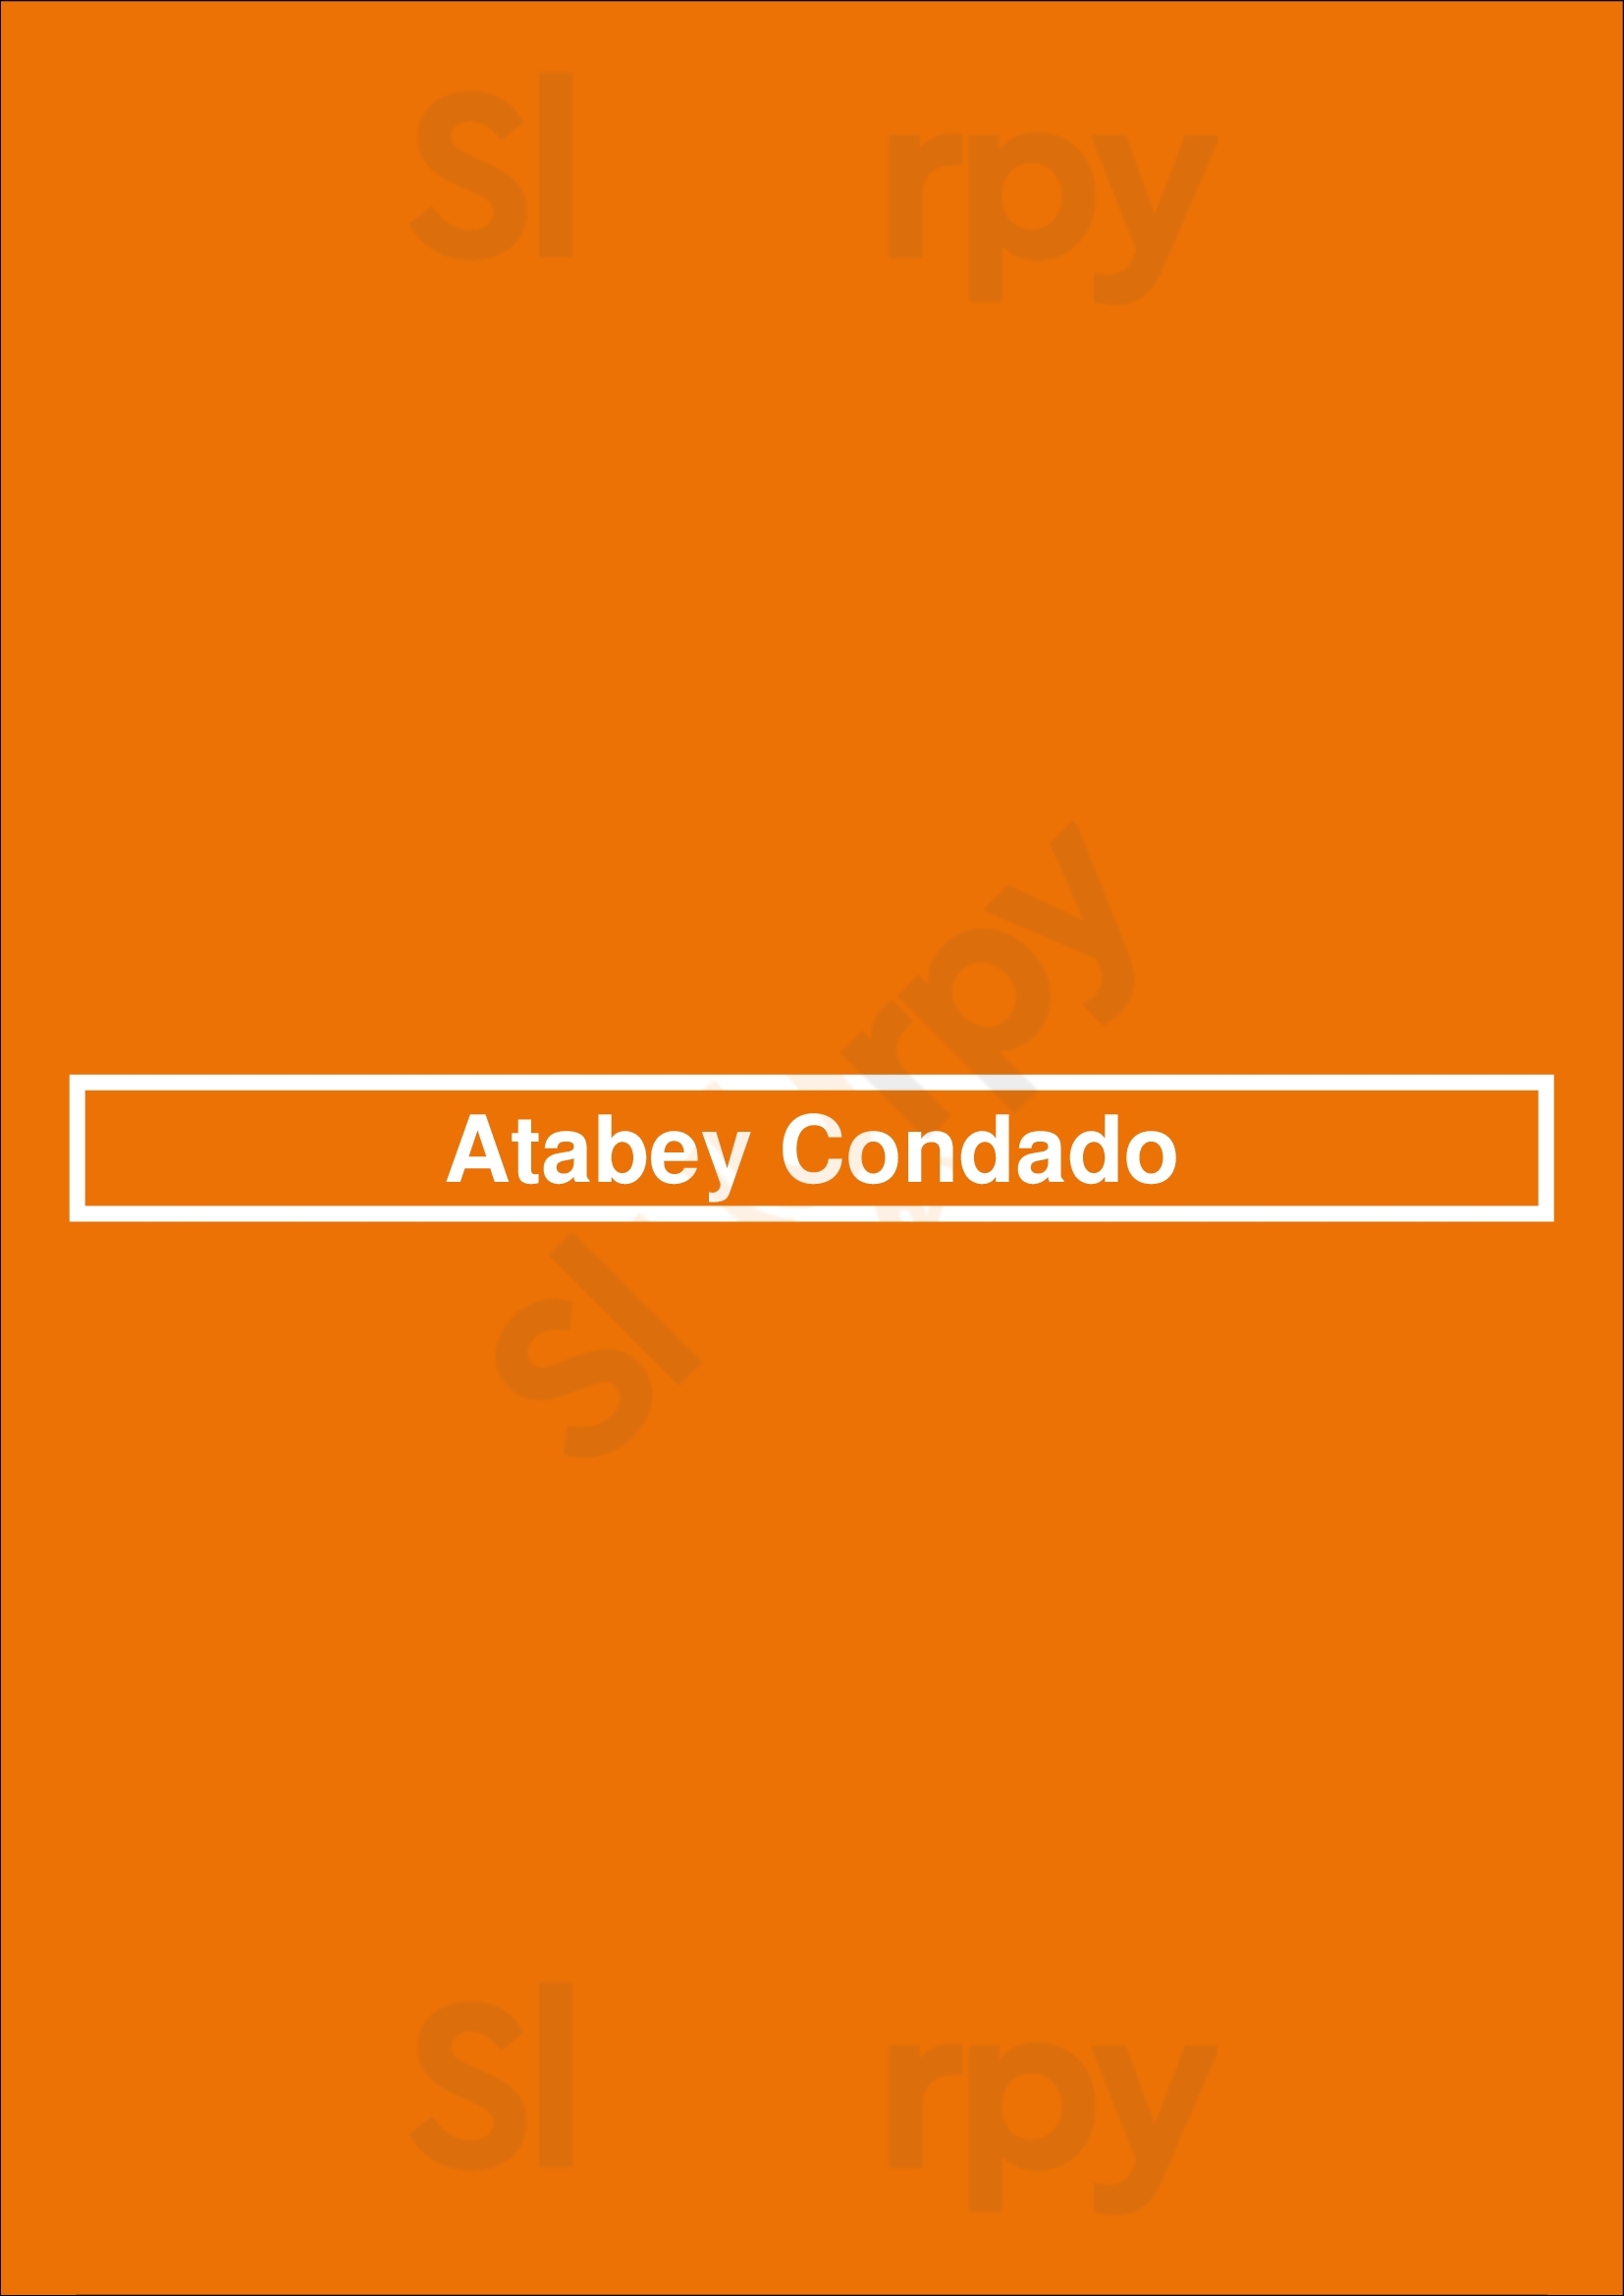 Atabey Condado San Juan Menu - 1